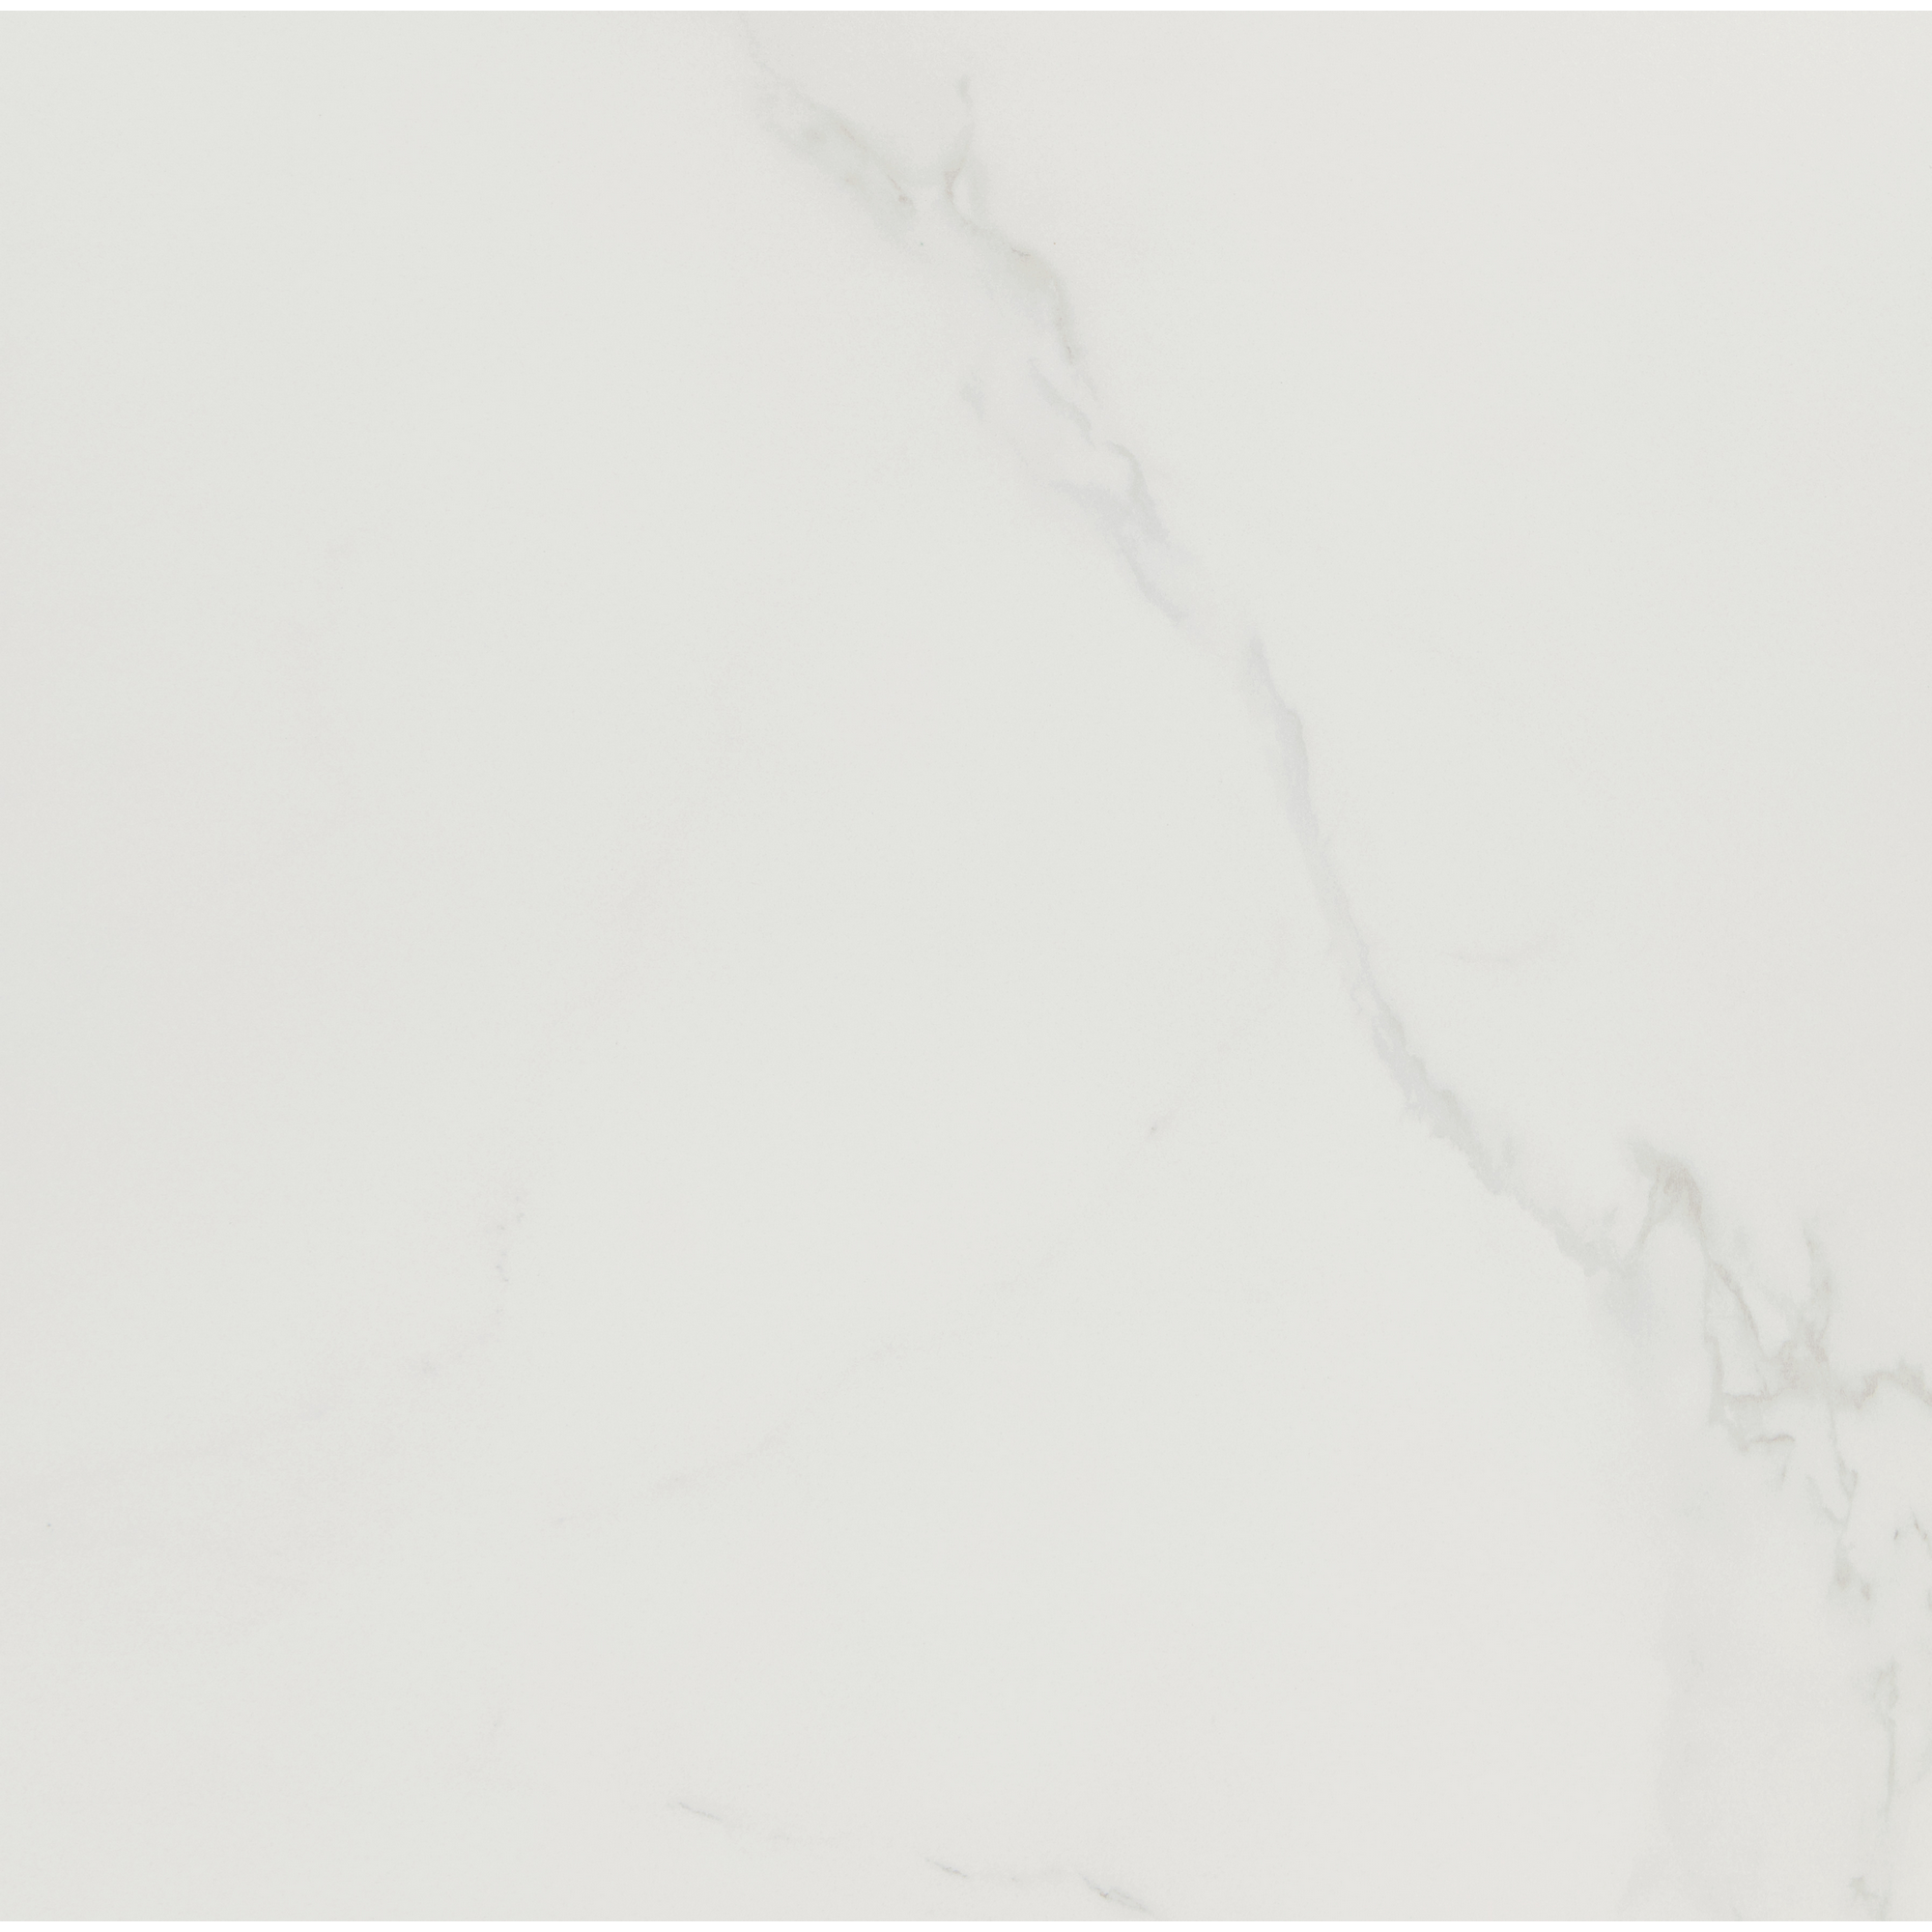 Bodenfliese 'Fontana' weiß matt 60 x 60 cm